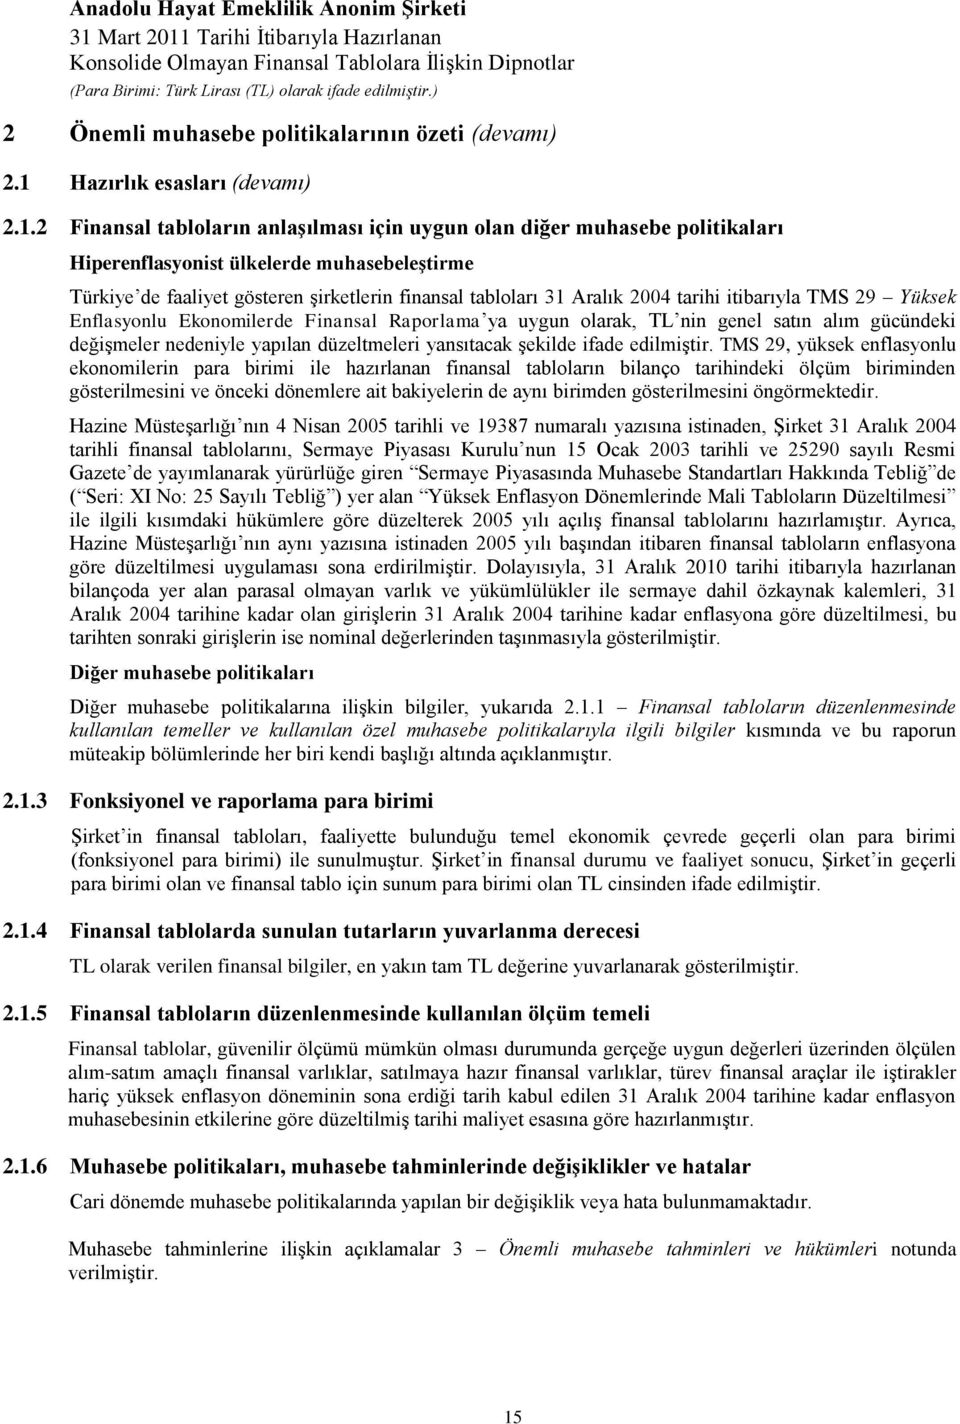 2 Finansal tabloların anlaģılması için uygun olan diğer muhasebe politikaları Hiperenflasyonist ülkelerde muhasebeleģtirme Türkiye de faaliyet gösteren Ģirketlerin finansal tabloları 31 Aralık 2004